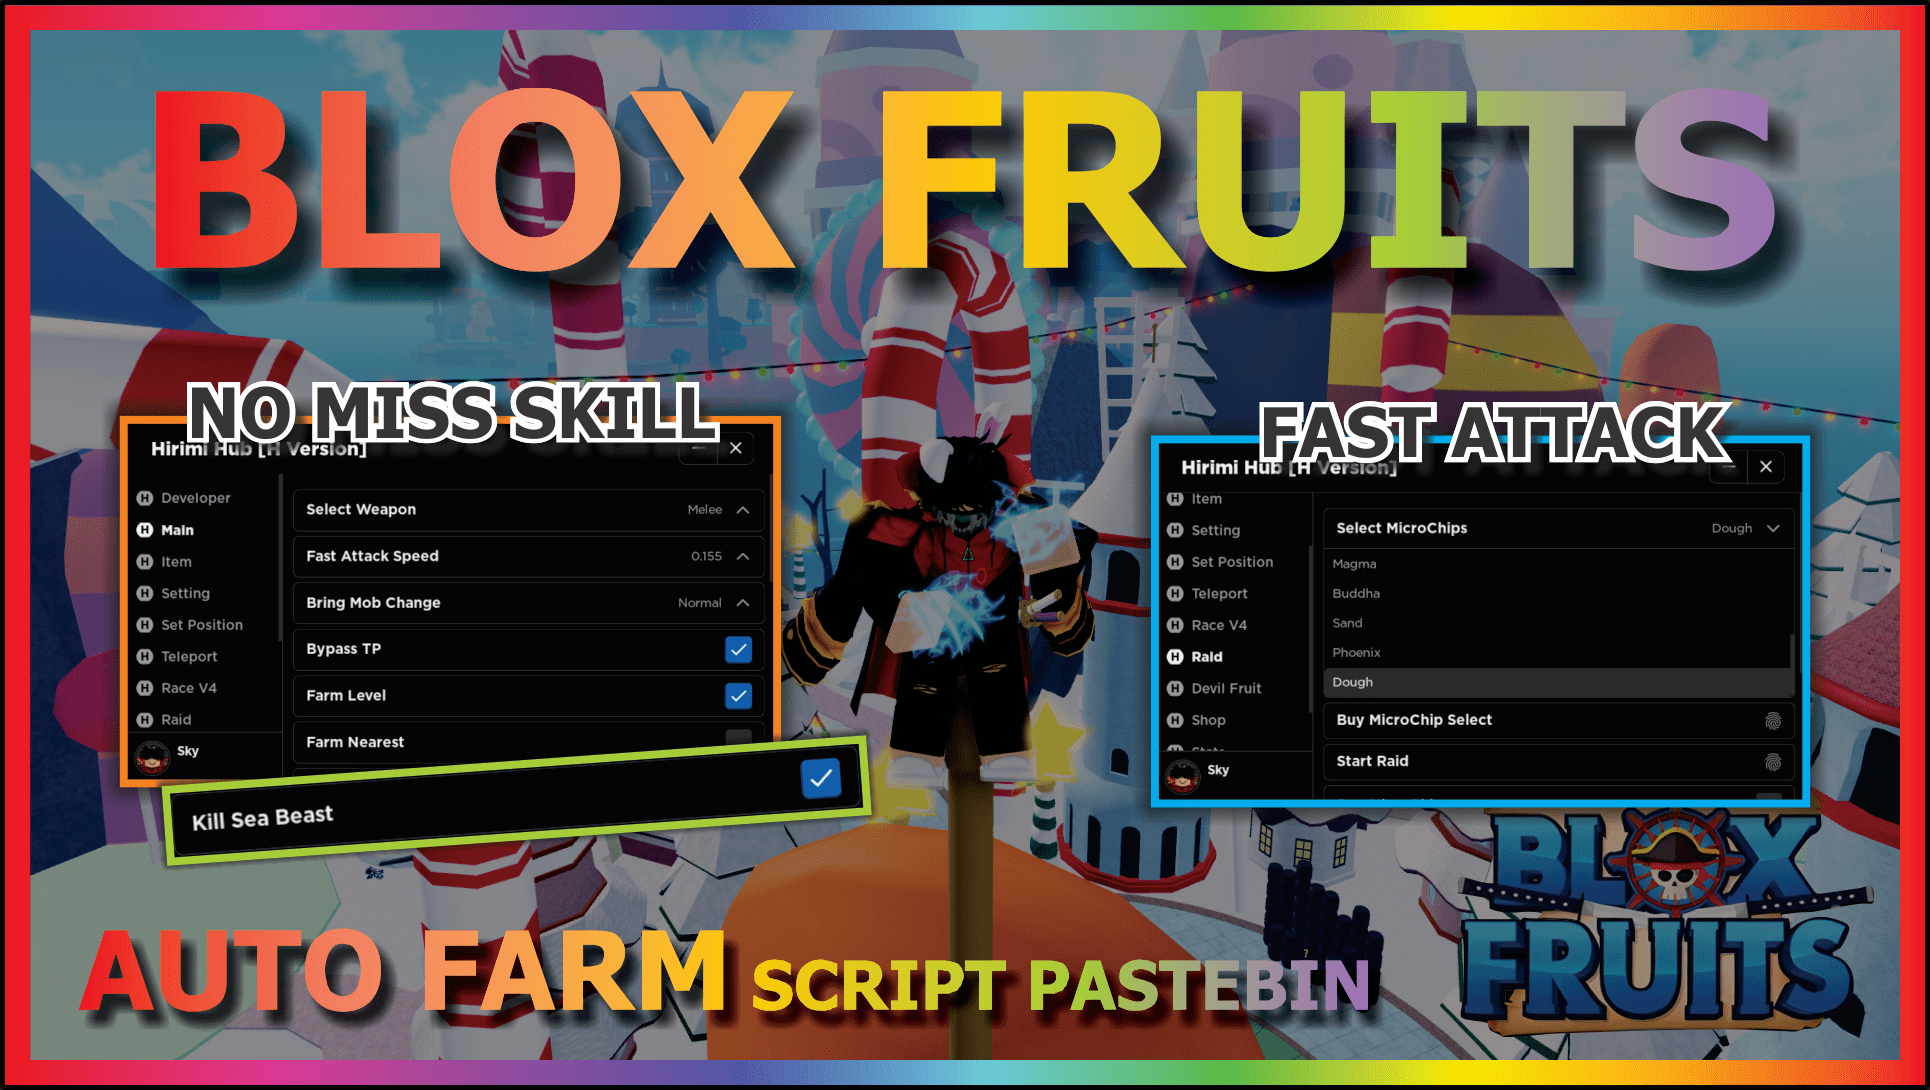 BLOX FRUITS Script Pastebin 2023 UPDATE 19 AUTO FARM, FAST ATTACK, AUTO  RAID